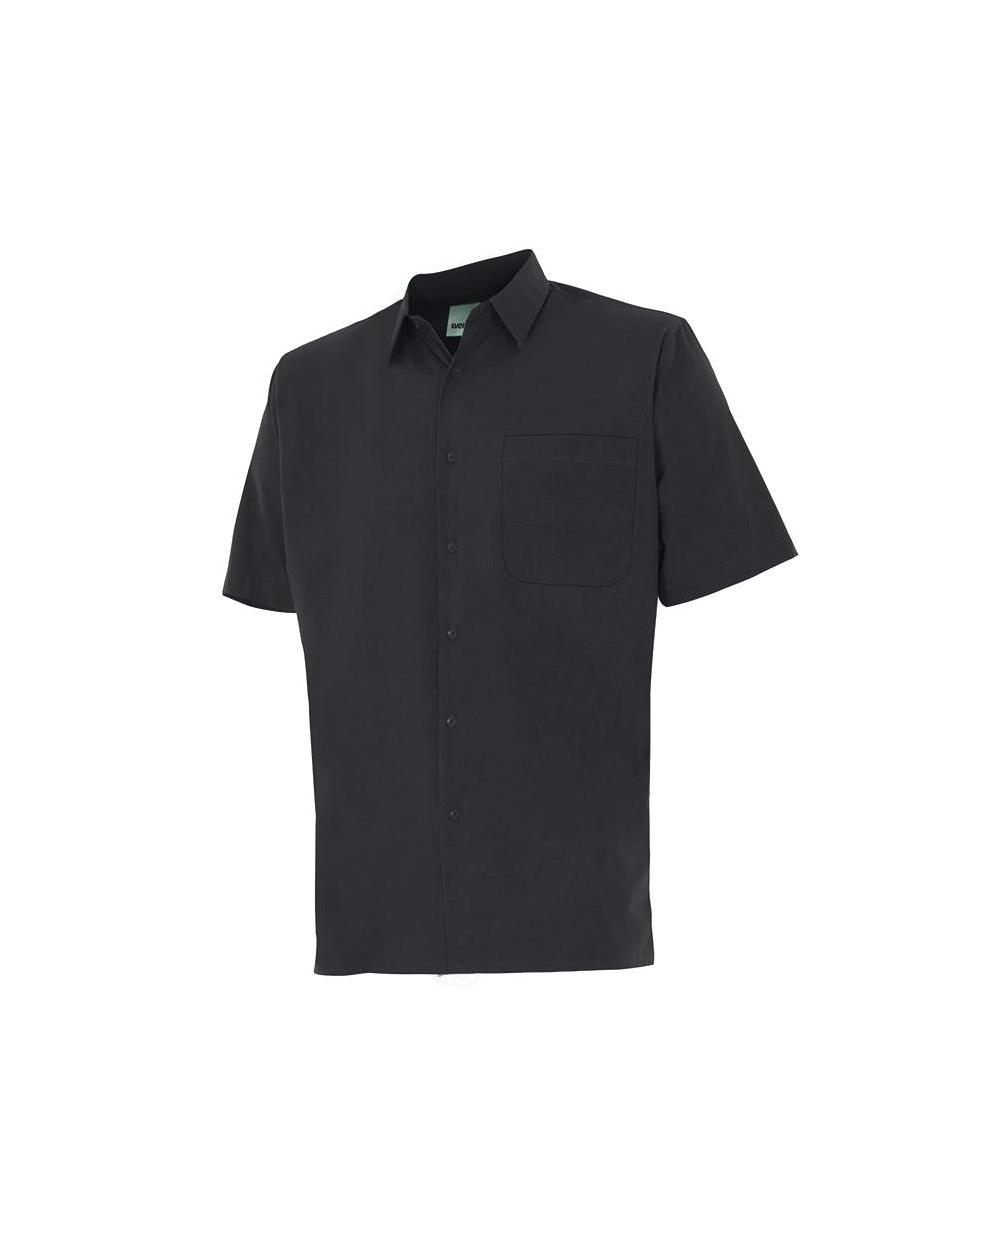 Comprar Camisa manga corta un bolsillo serie 531 online barato Negro